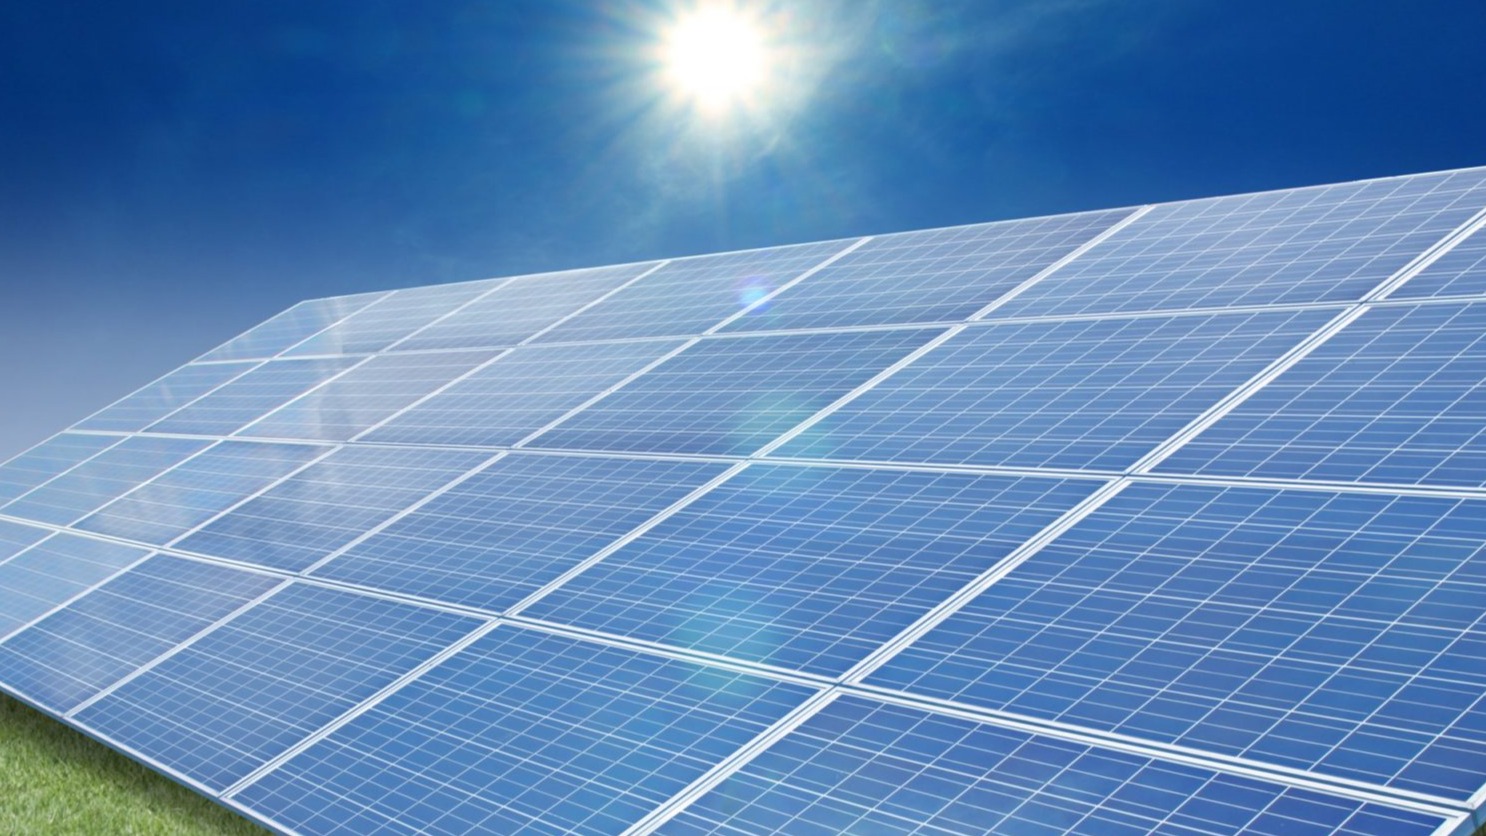 太陽光発電や省エネに関わる設備の導入